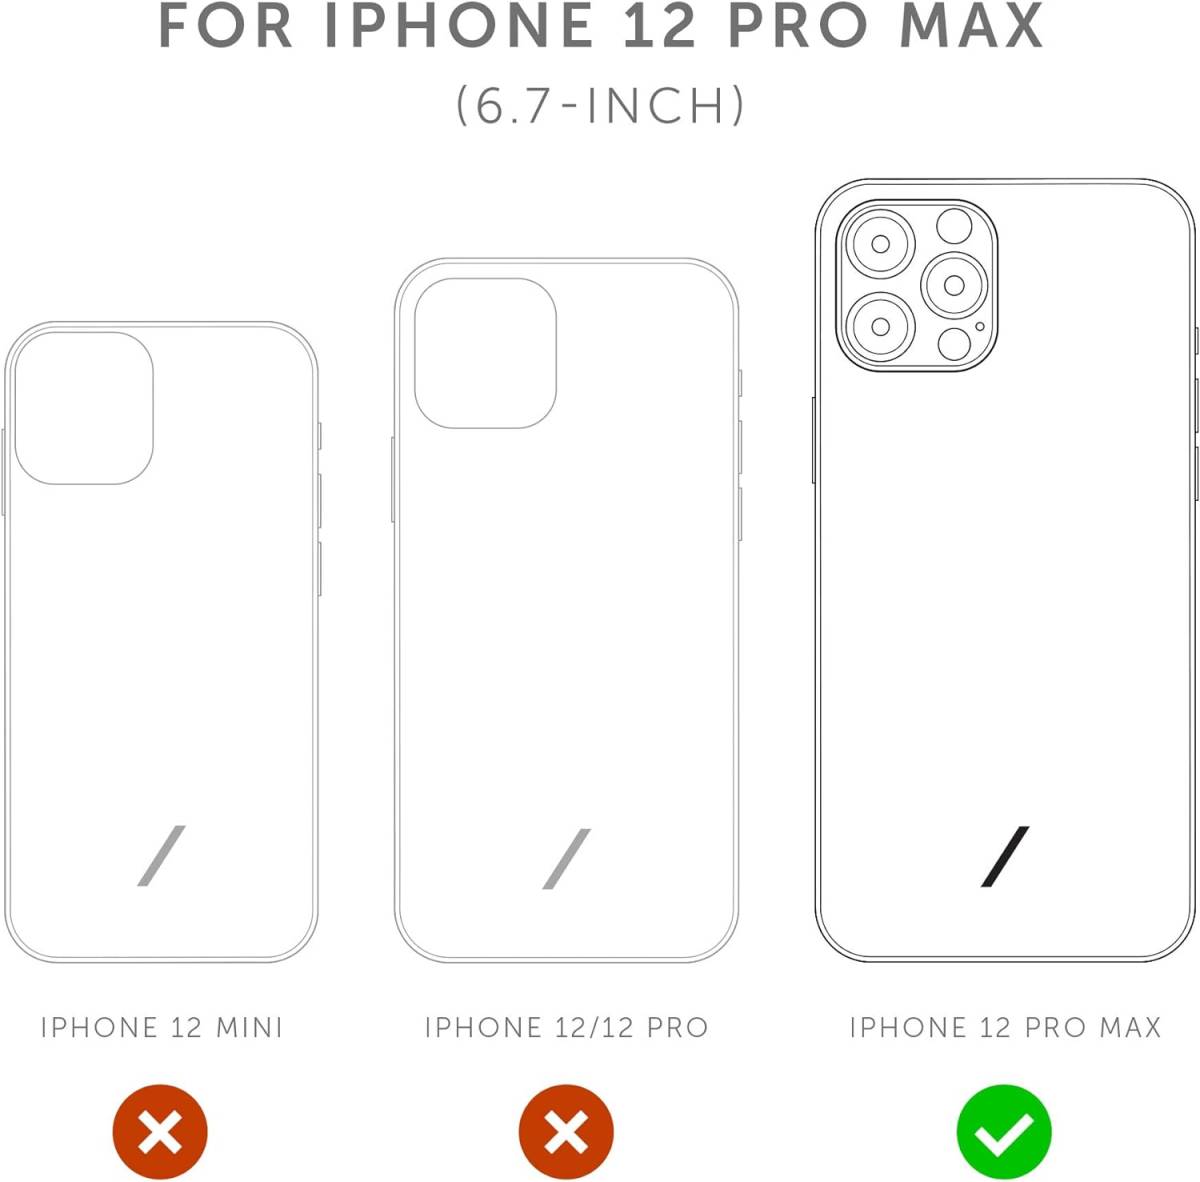 Native Union Clic Classic Case レザースマホケース iPhone 12 Pro Max対応 - イタリアンレザーケース (ブラック) H217